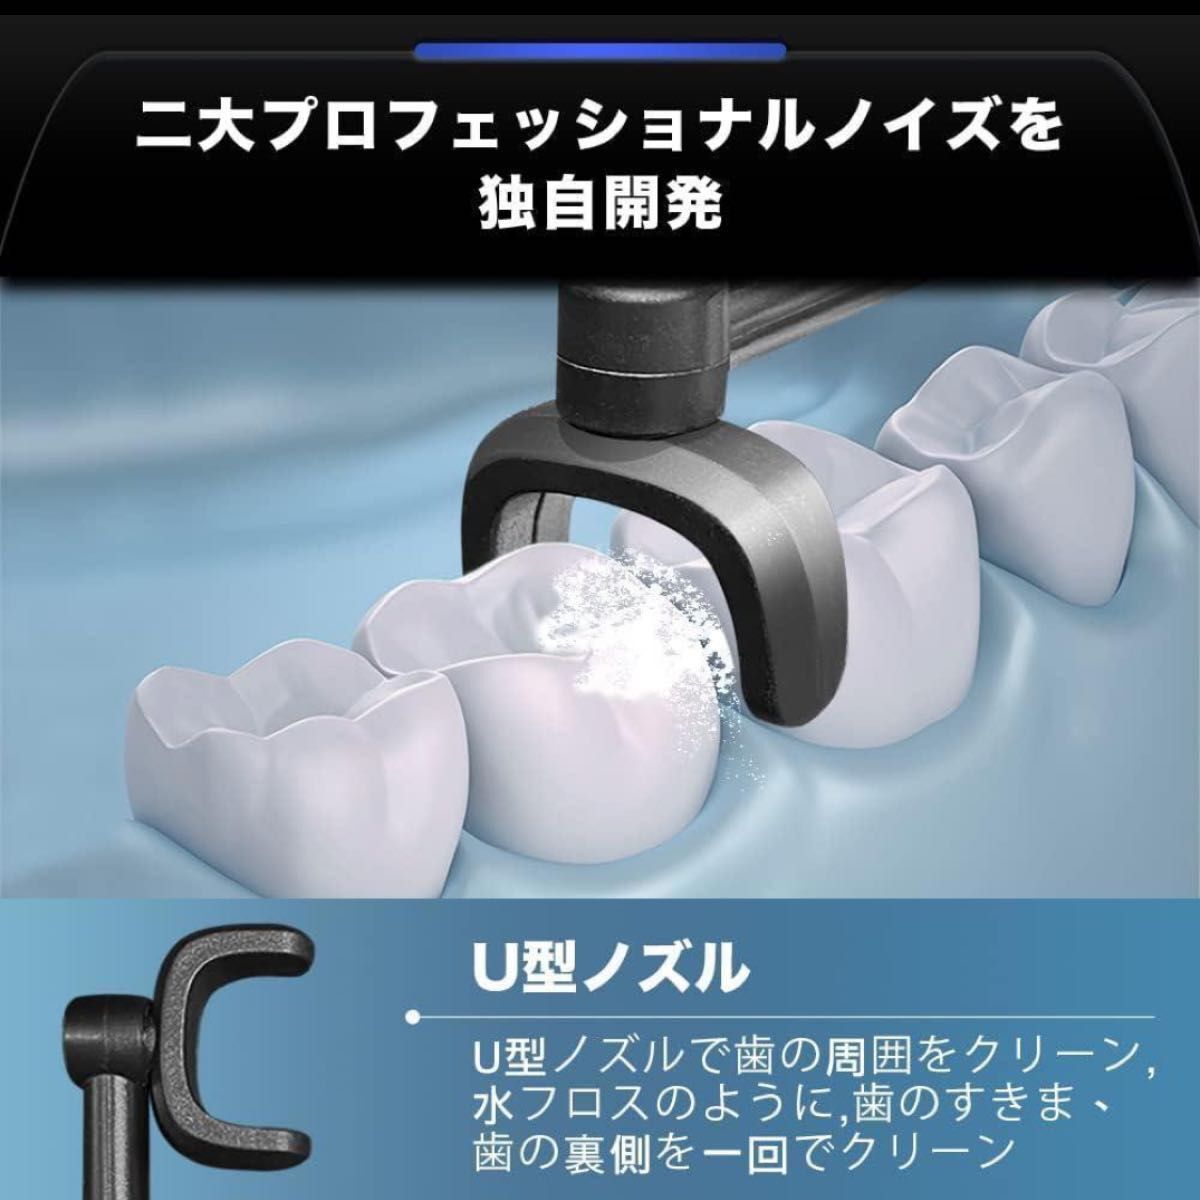 口腔洗浄器 Ocare Clean 3段階調整 USB充電器 オーラルケア 口腔洗浄機 ウォーターフロスジェットウォッシャーの画像4